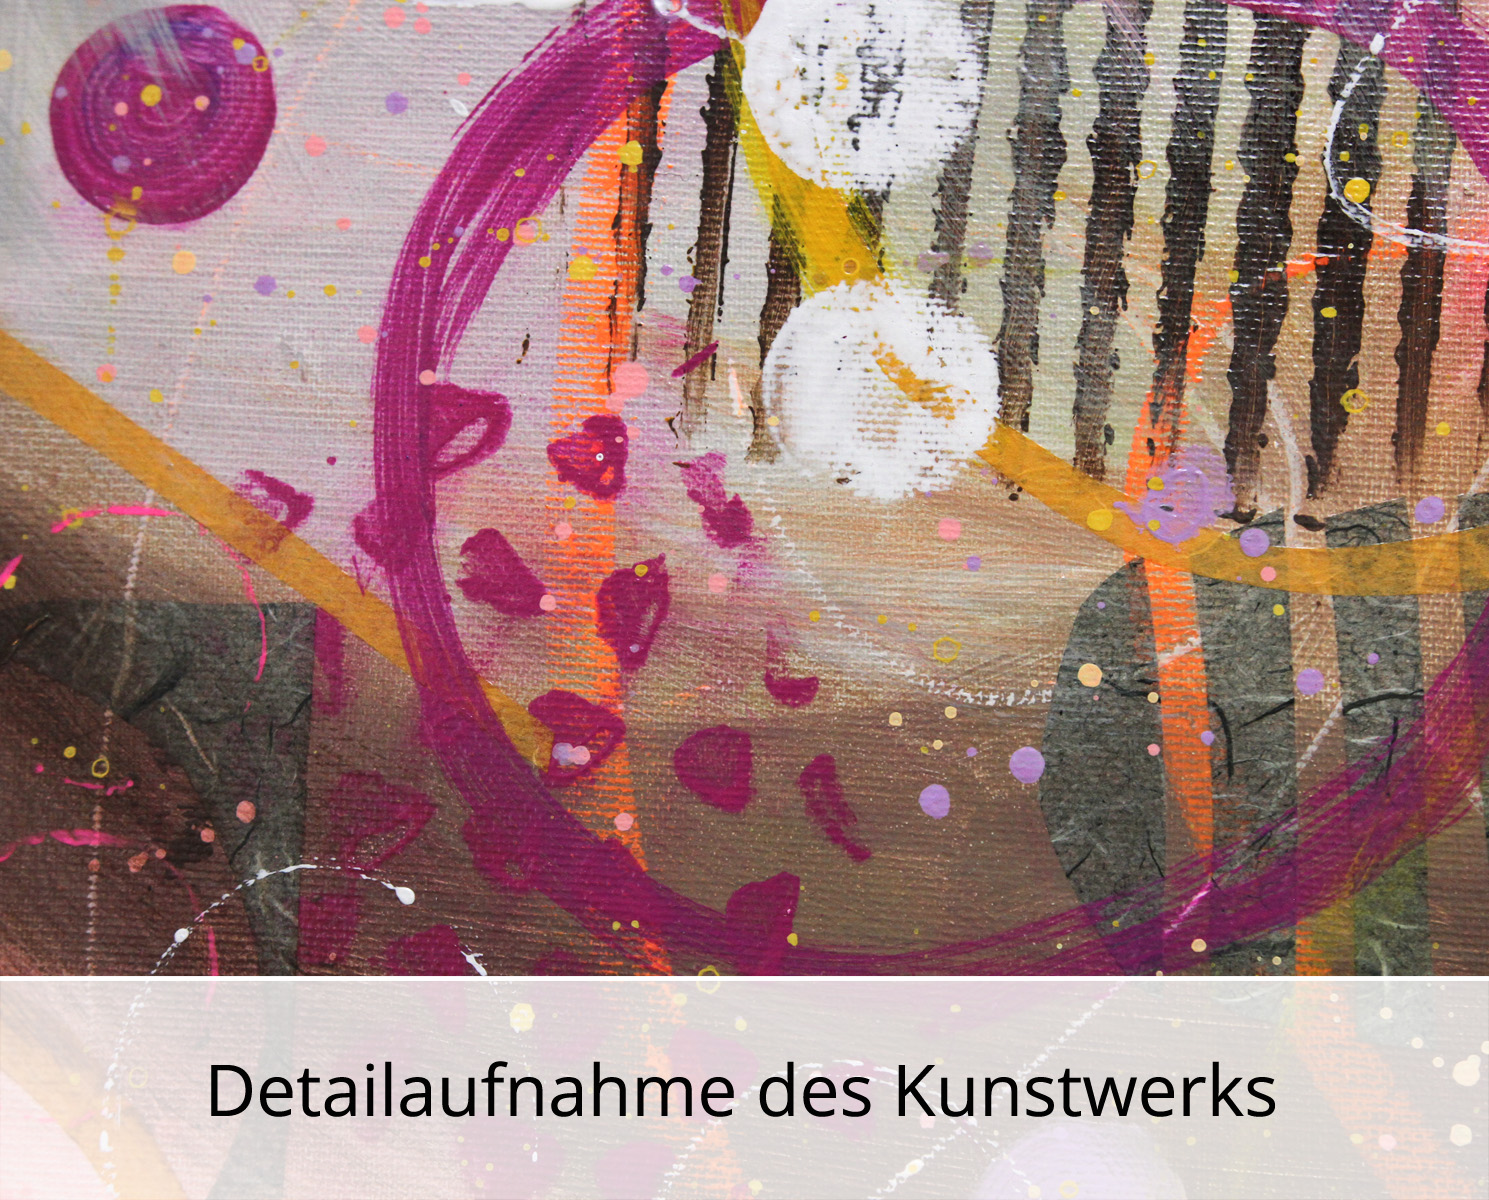 Abstrakte Malerei von Ewa Martens: Suche nach dem Glück V, Original/Unikat